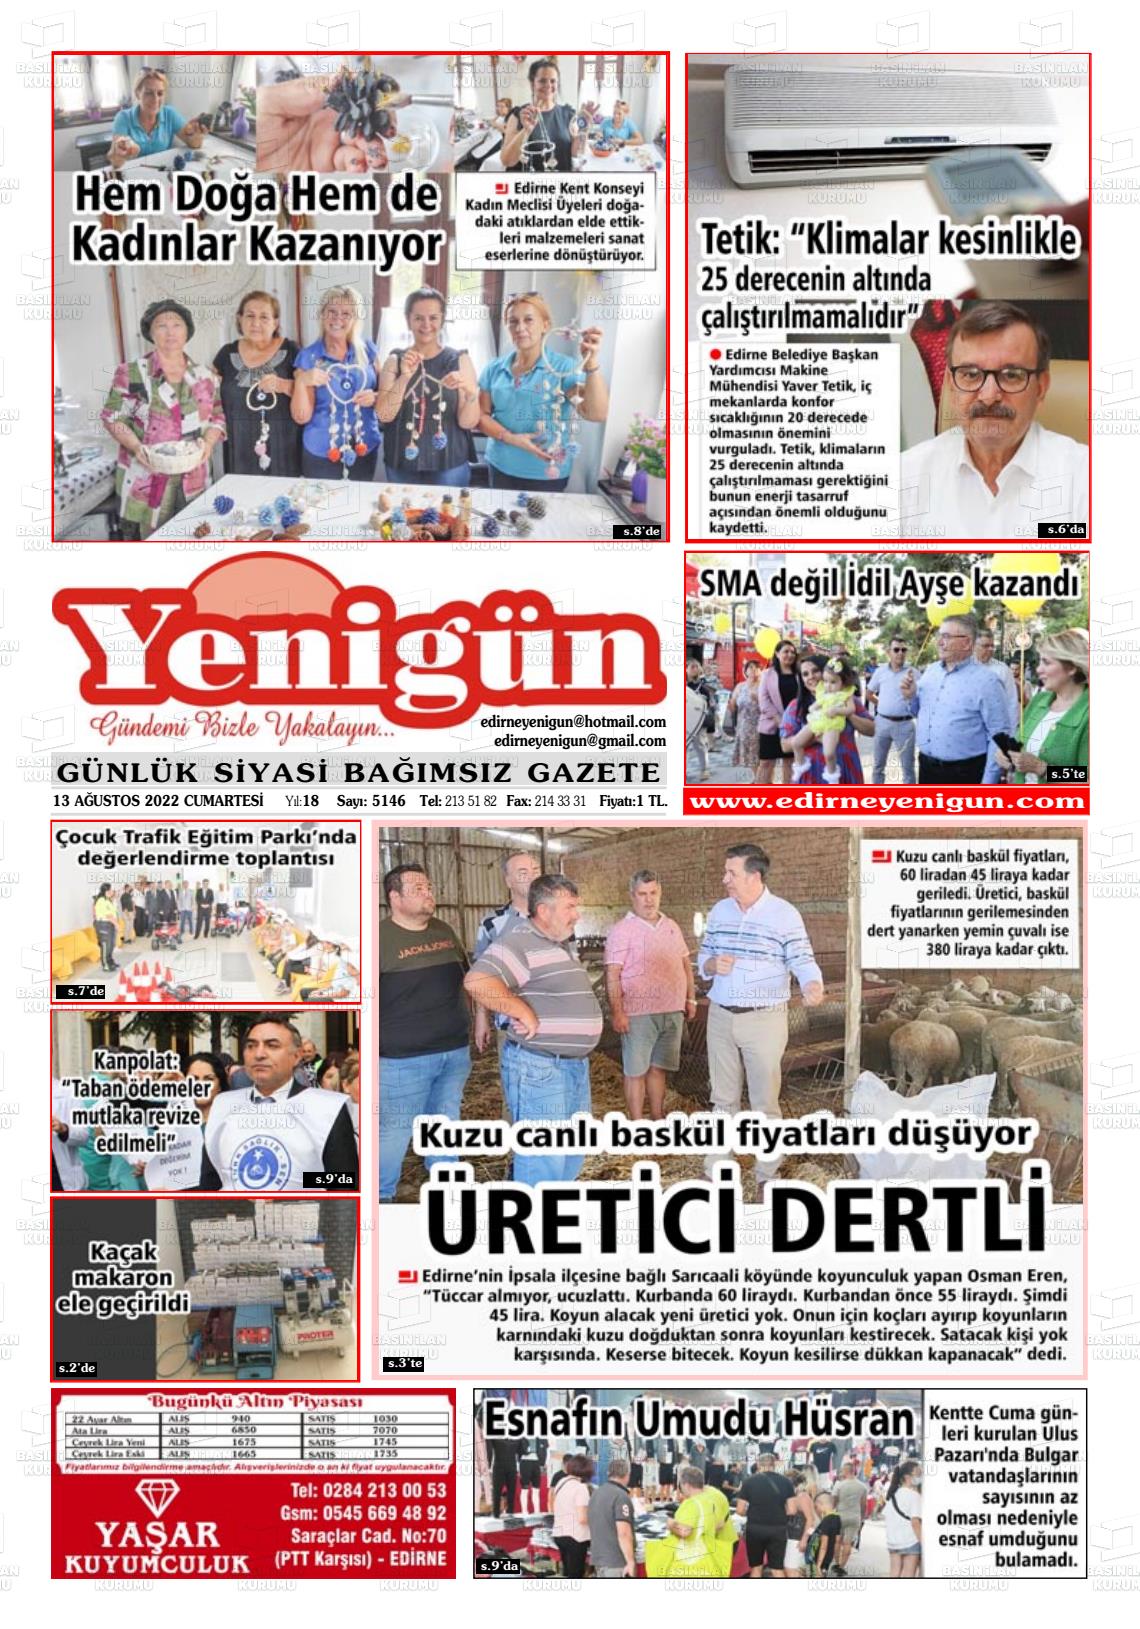 13 Ağustos 2022 Edirne Yenigün Gazete Manşeti